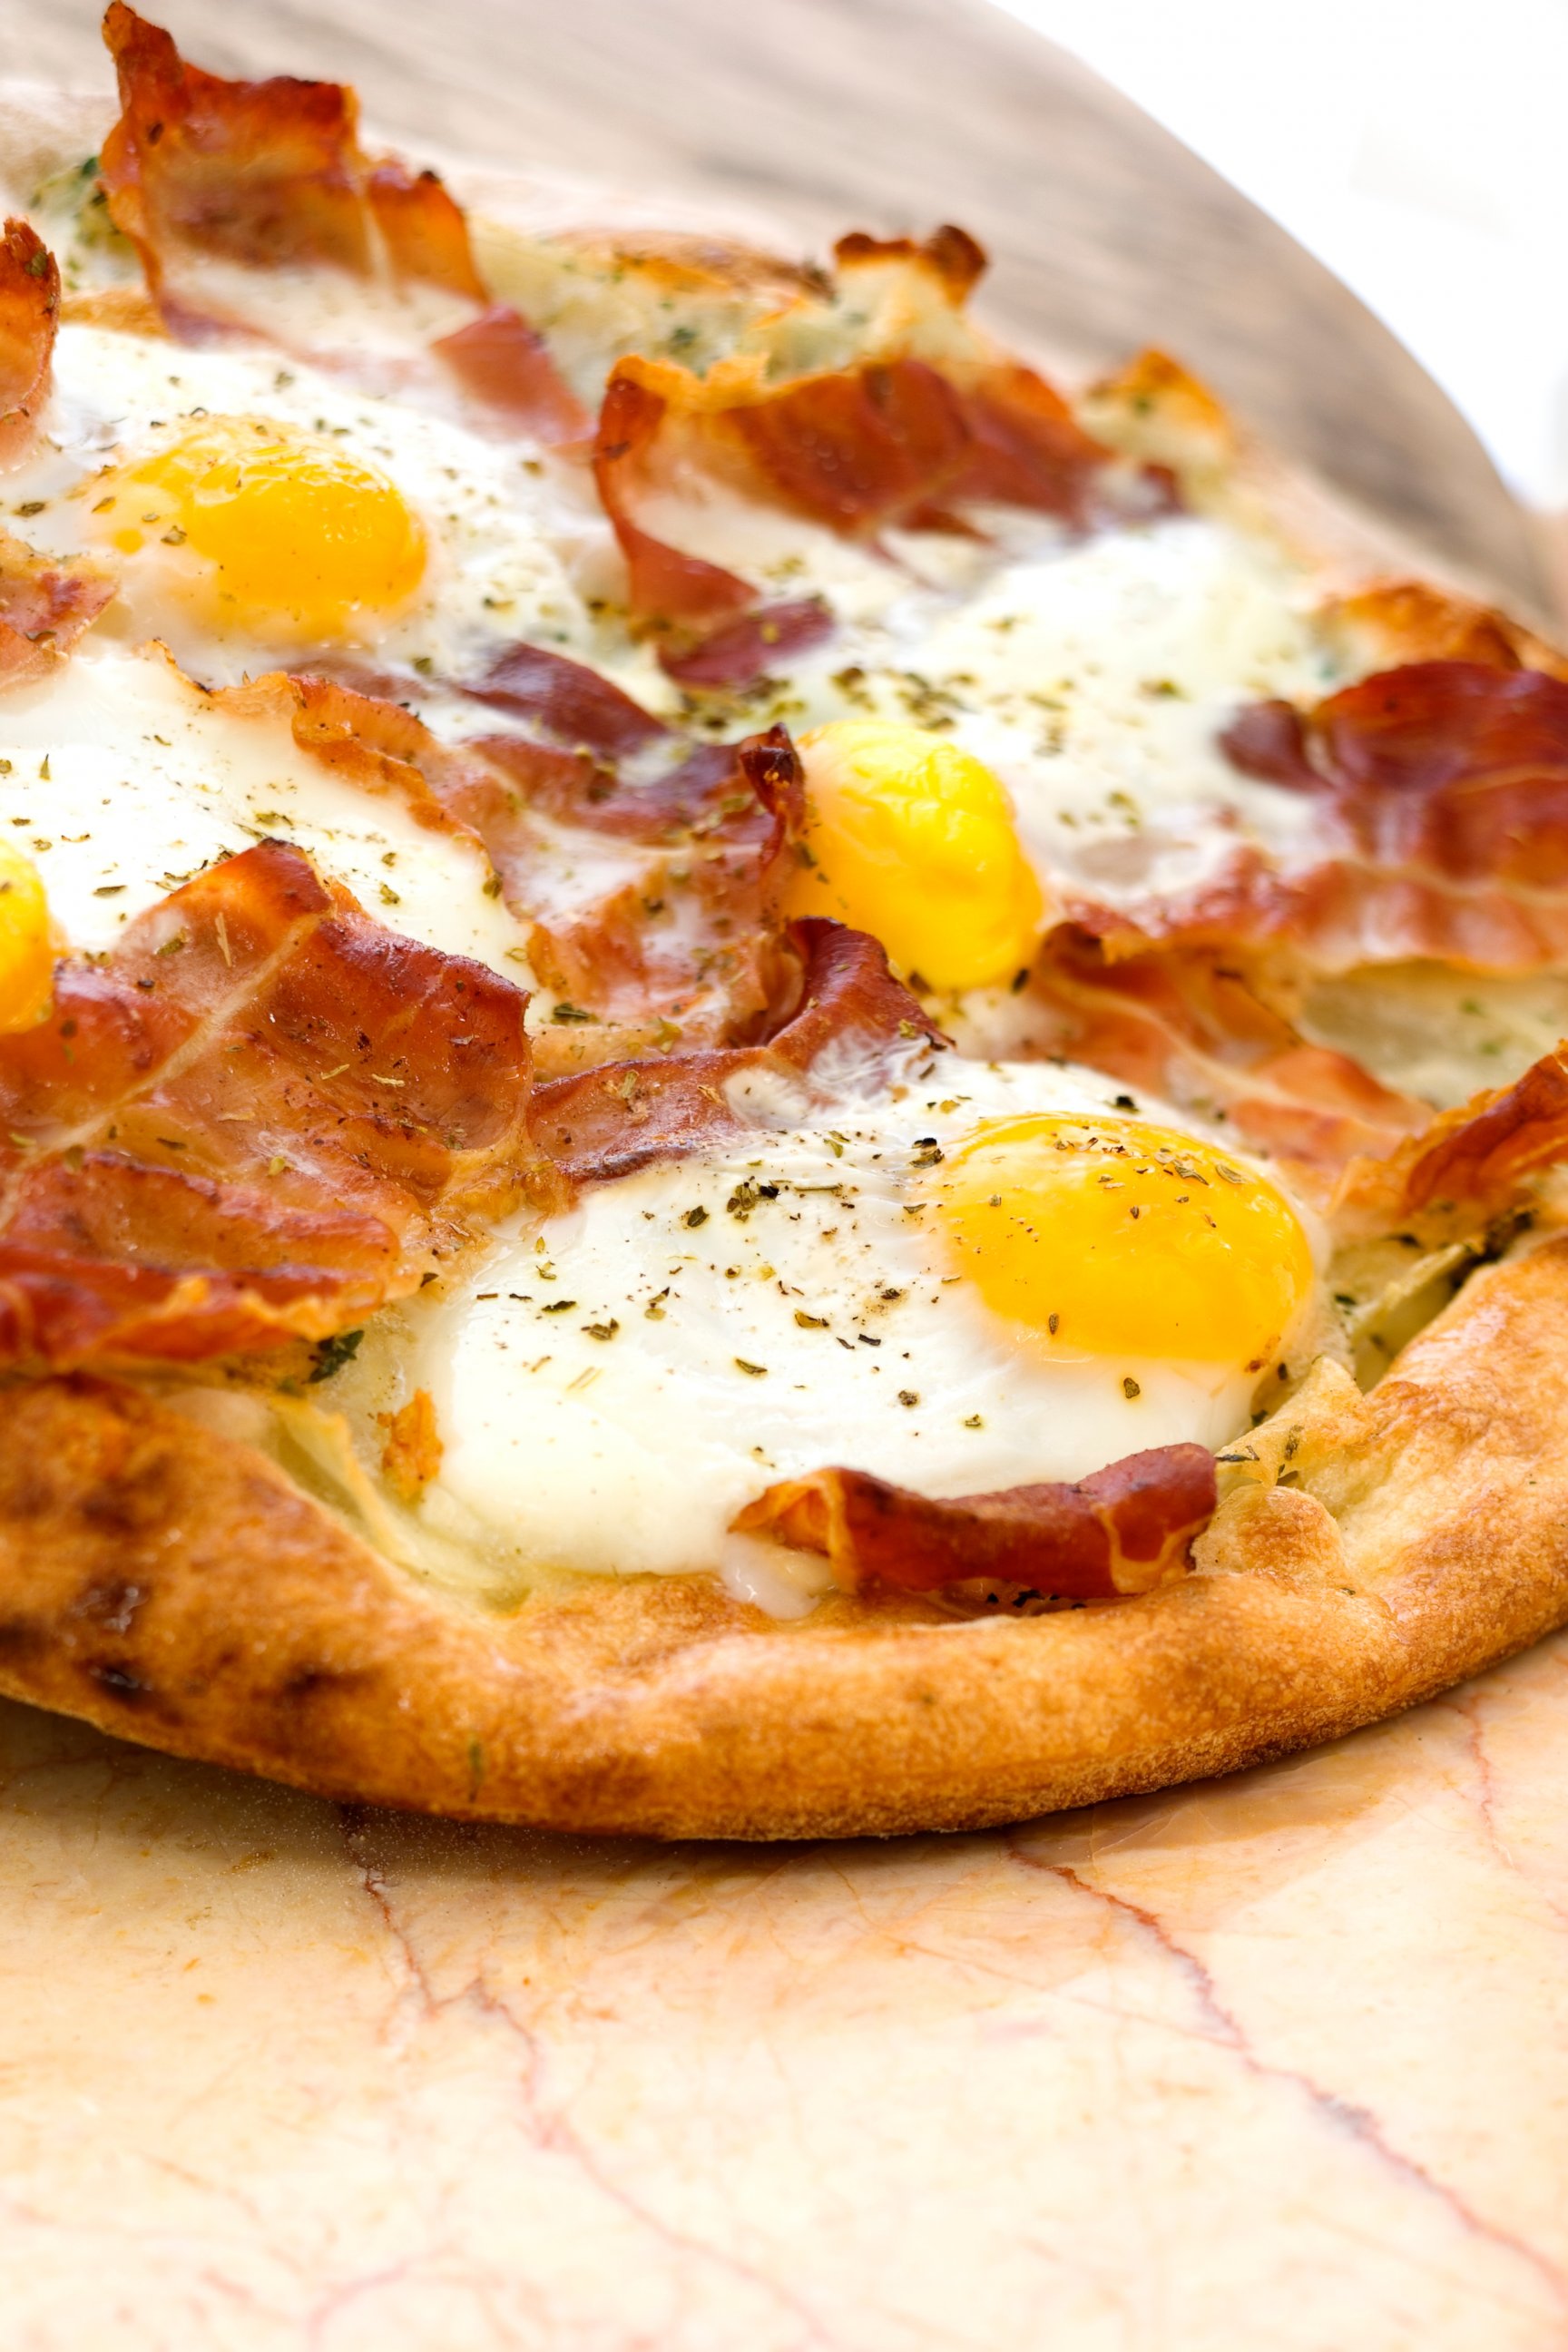 PHOTO: Egg pizza